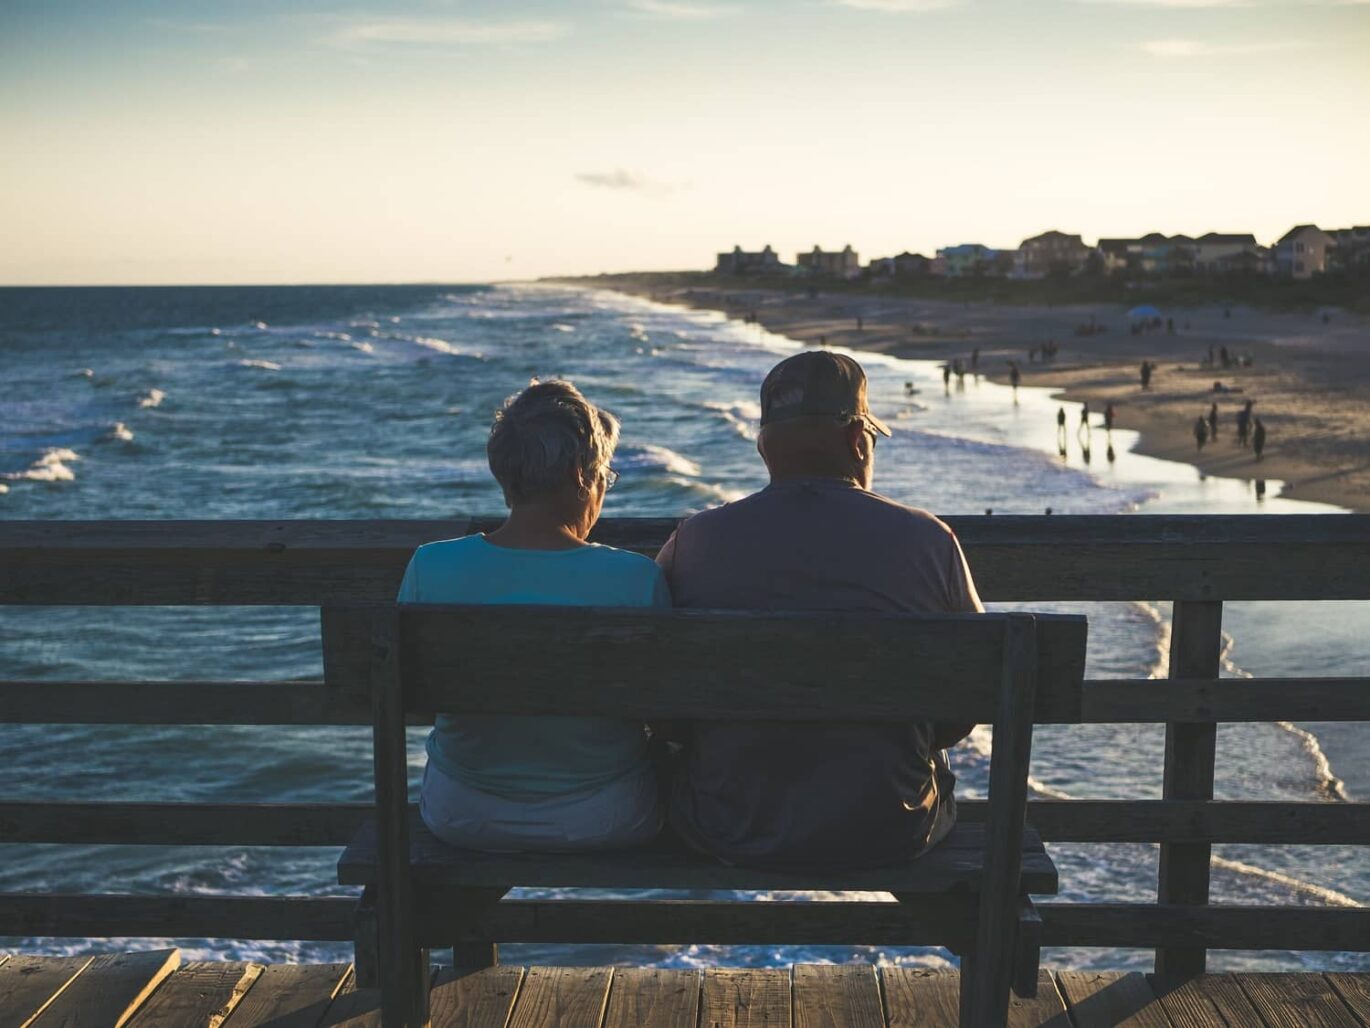 A senior couple relaxing on a bench near beach